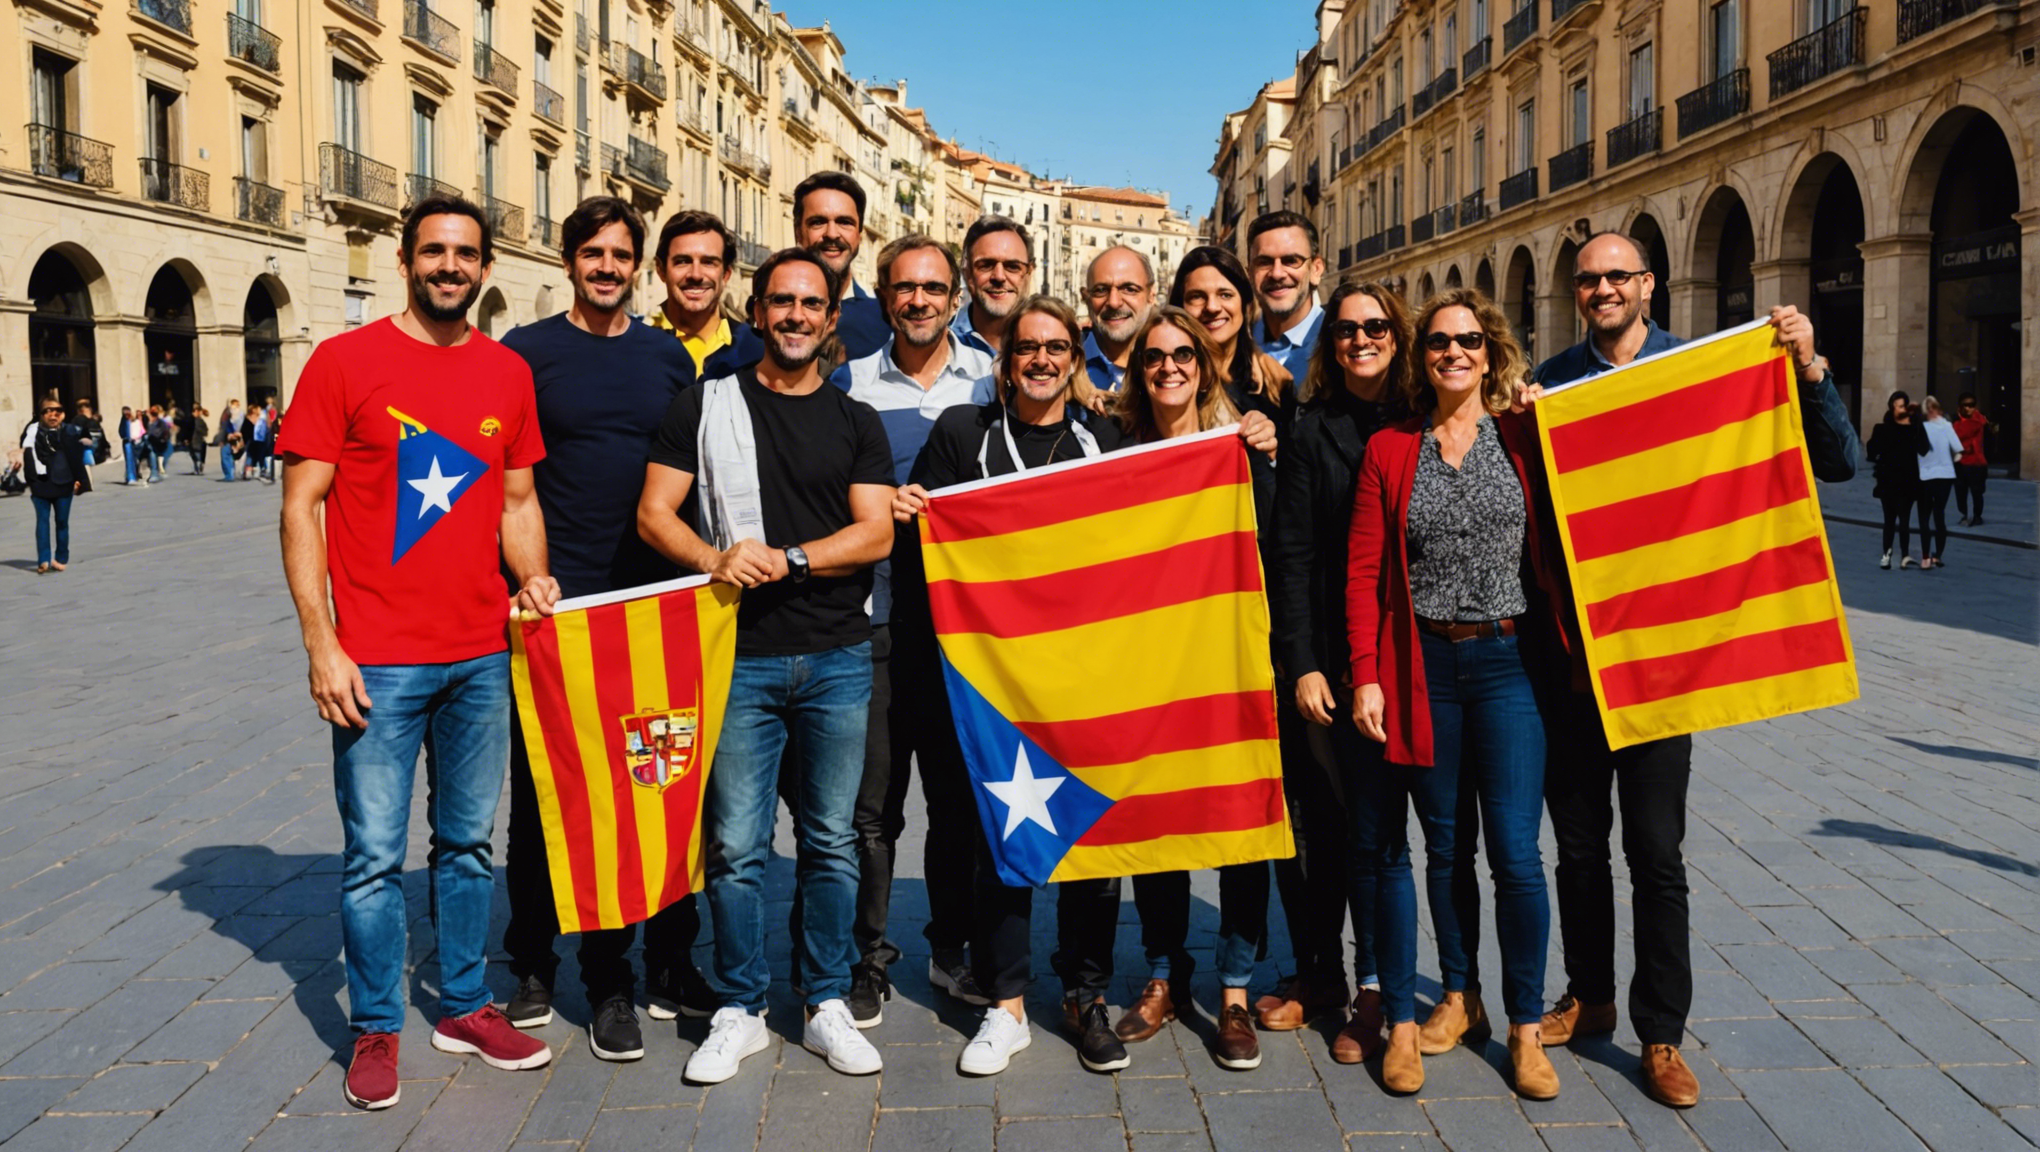 découvrez comment atteindre le niveau c de catalan en autodidacte grâce à nos conseils et astuces pratiques.